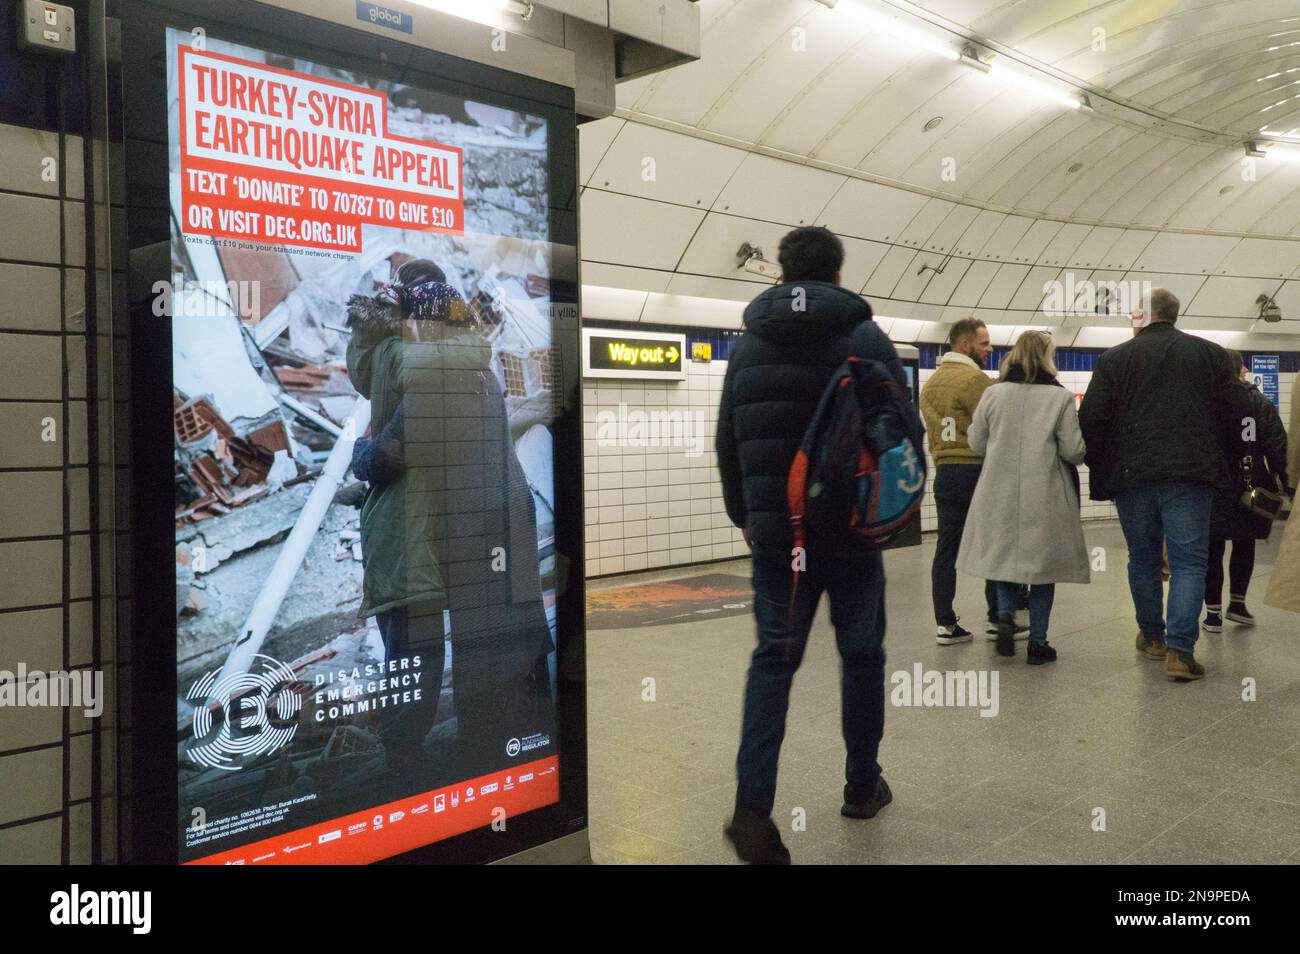 London, Vereinigtes Königreich 12. Februar 2023: Ein Poster des Katastrophen-Notfallausschusses (DEC) in einer Londoner U-Bahn-Station ruft um Hilfe für die Erdbebenüberlebenden in der Türkei und Syrien auf. Obwohl die Zahl der Todesopfer auf tragische Weise auf über 33.000 Menschen gestiegen ist, hat die britische Öffentlichkeit über £60 Millionen gespendet (davon £5 Millionen aus staatlichen Mitteln). Anna Watson/Alamy Live News Stockfoto